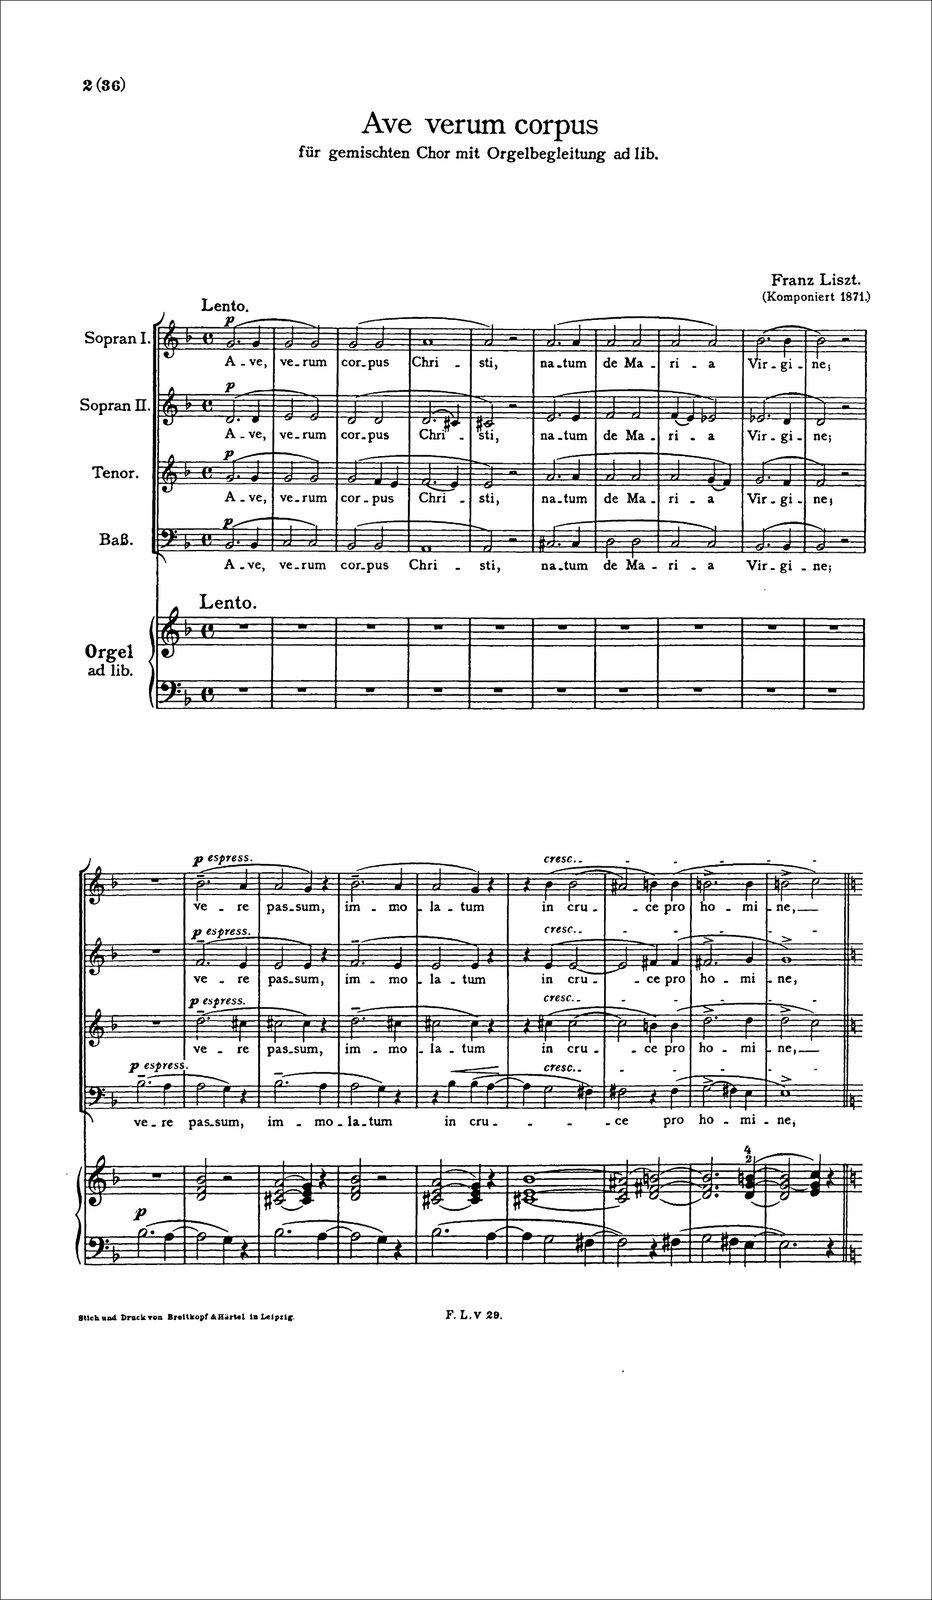 Ilustracja przedstawia zapis nutowy utworu „Ave verum corpus” Franciszka Liszta, który składa się z pięciolinii, na których umieszczone są zapisy określonych znaków muzycznych.